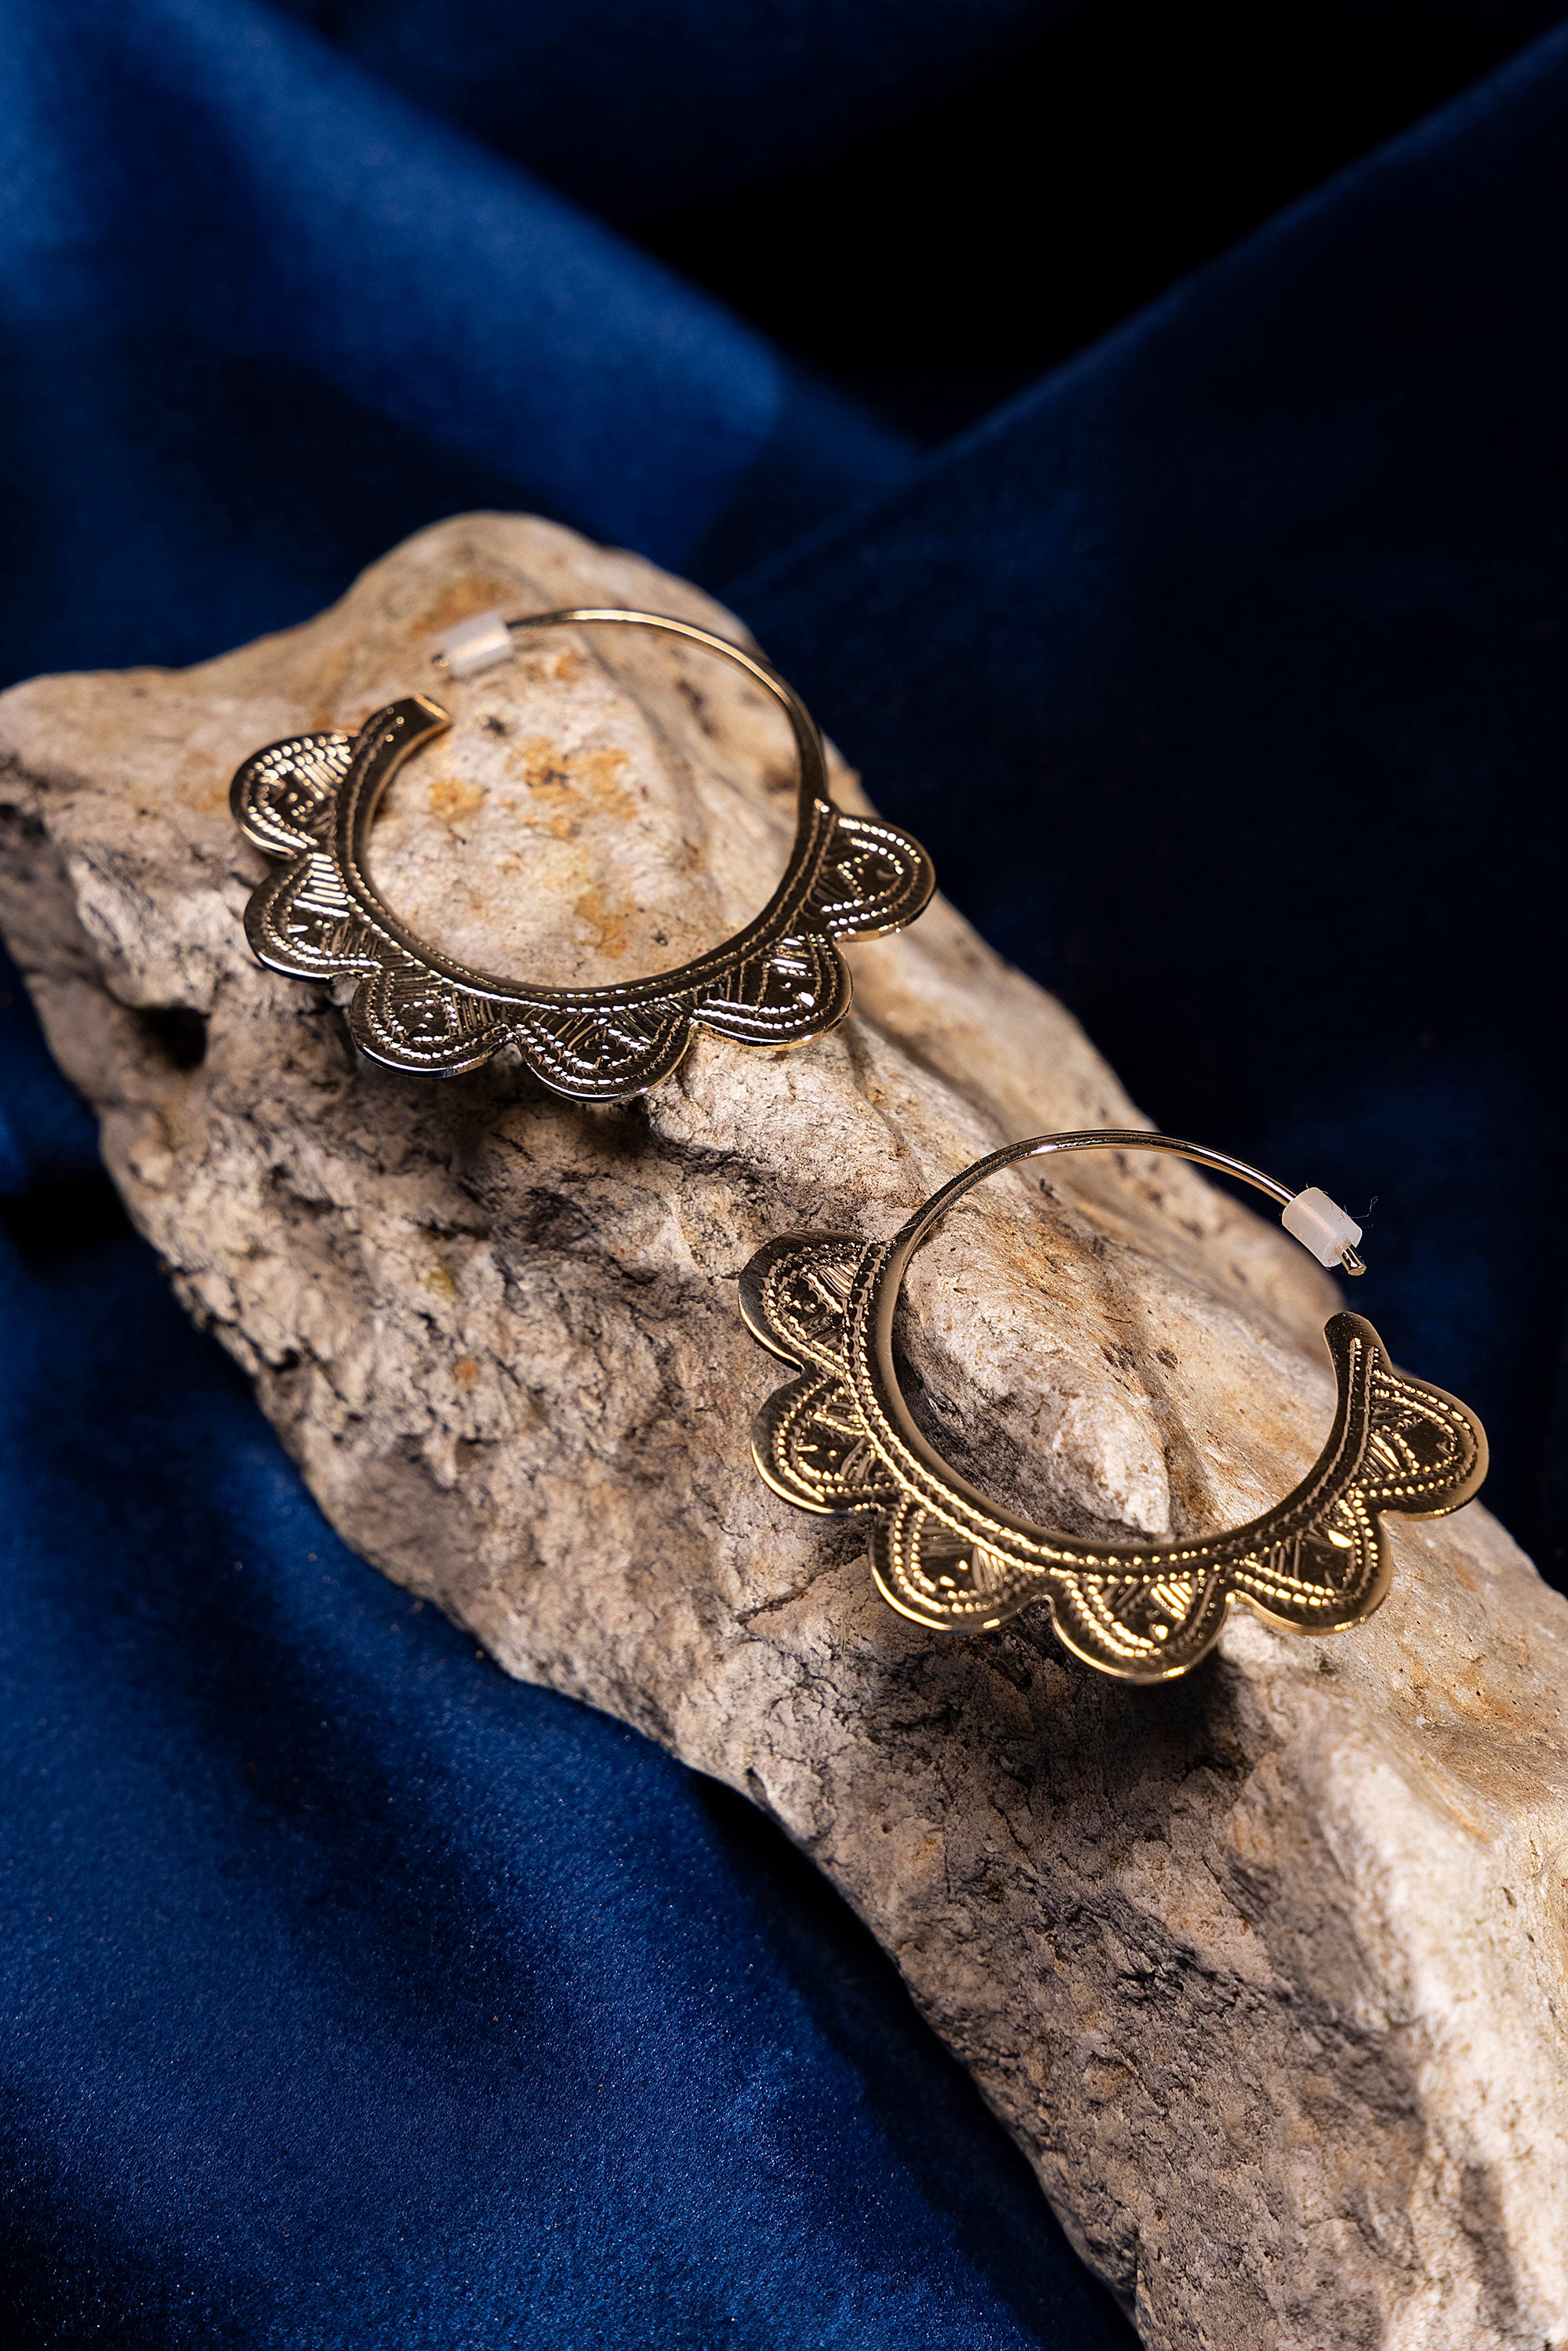 Ombre claire bijoux touareg artisanat taille argent or cisele ethnique mali